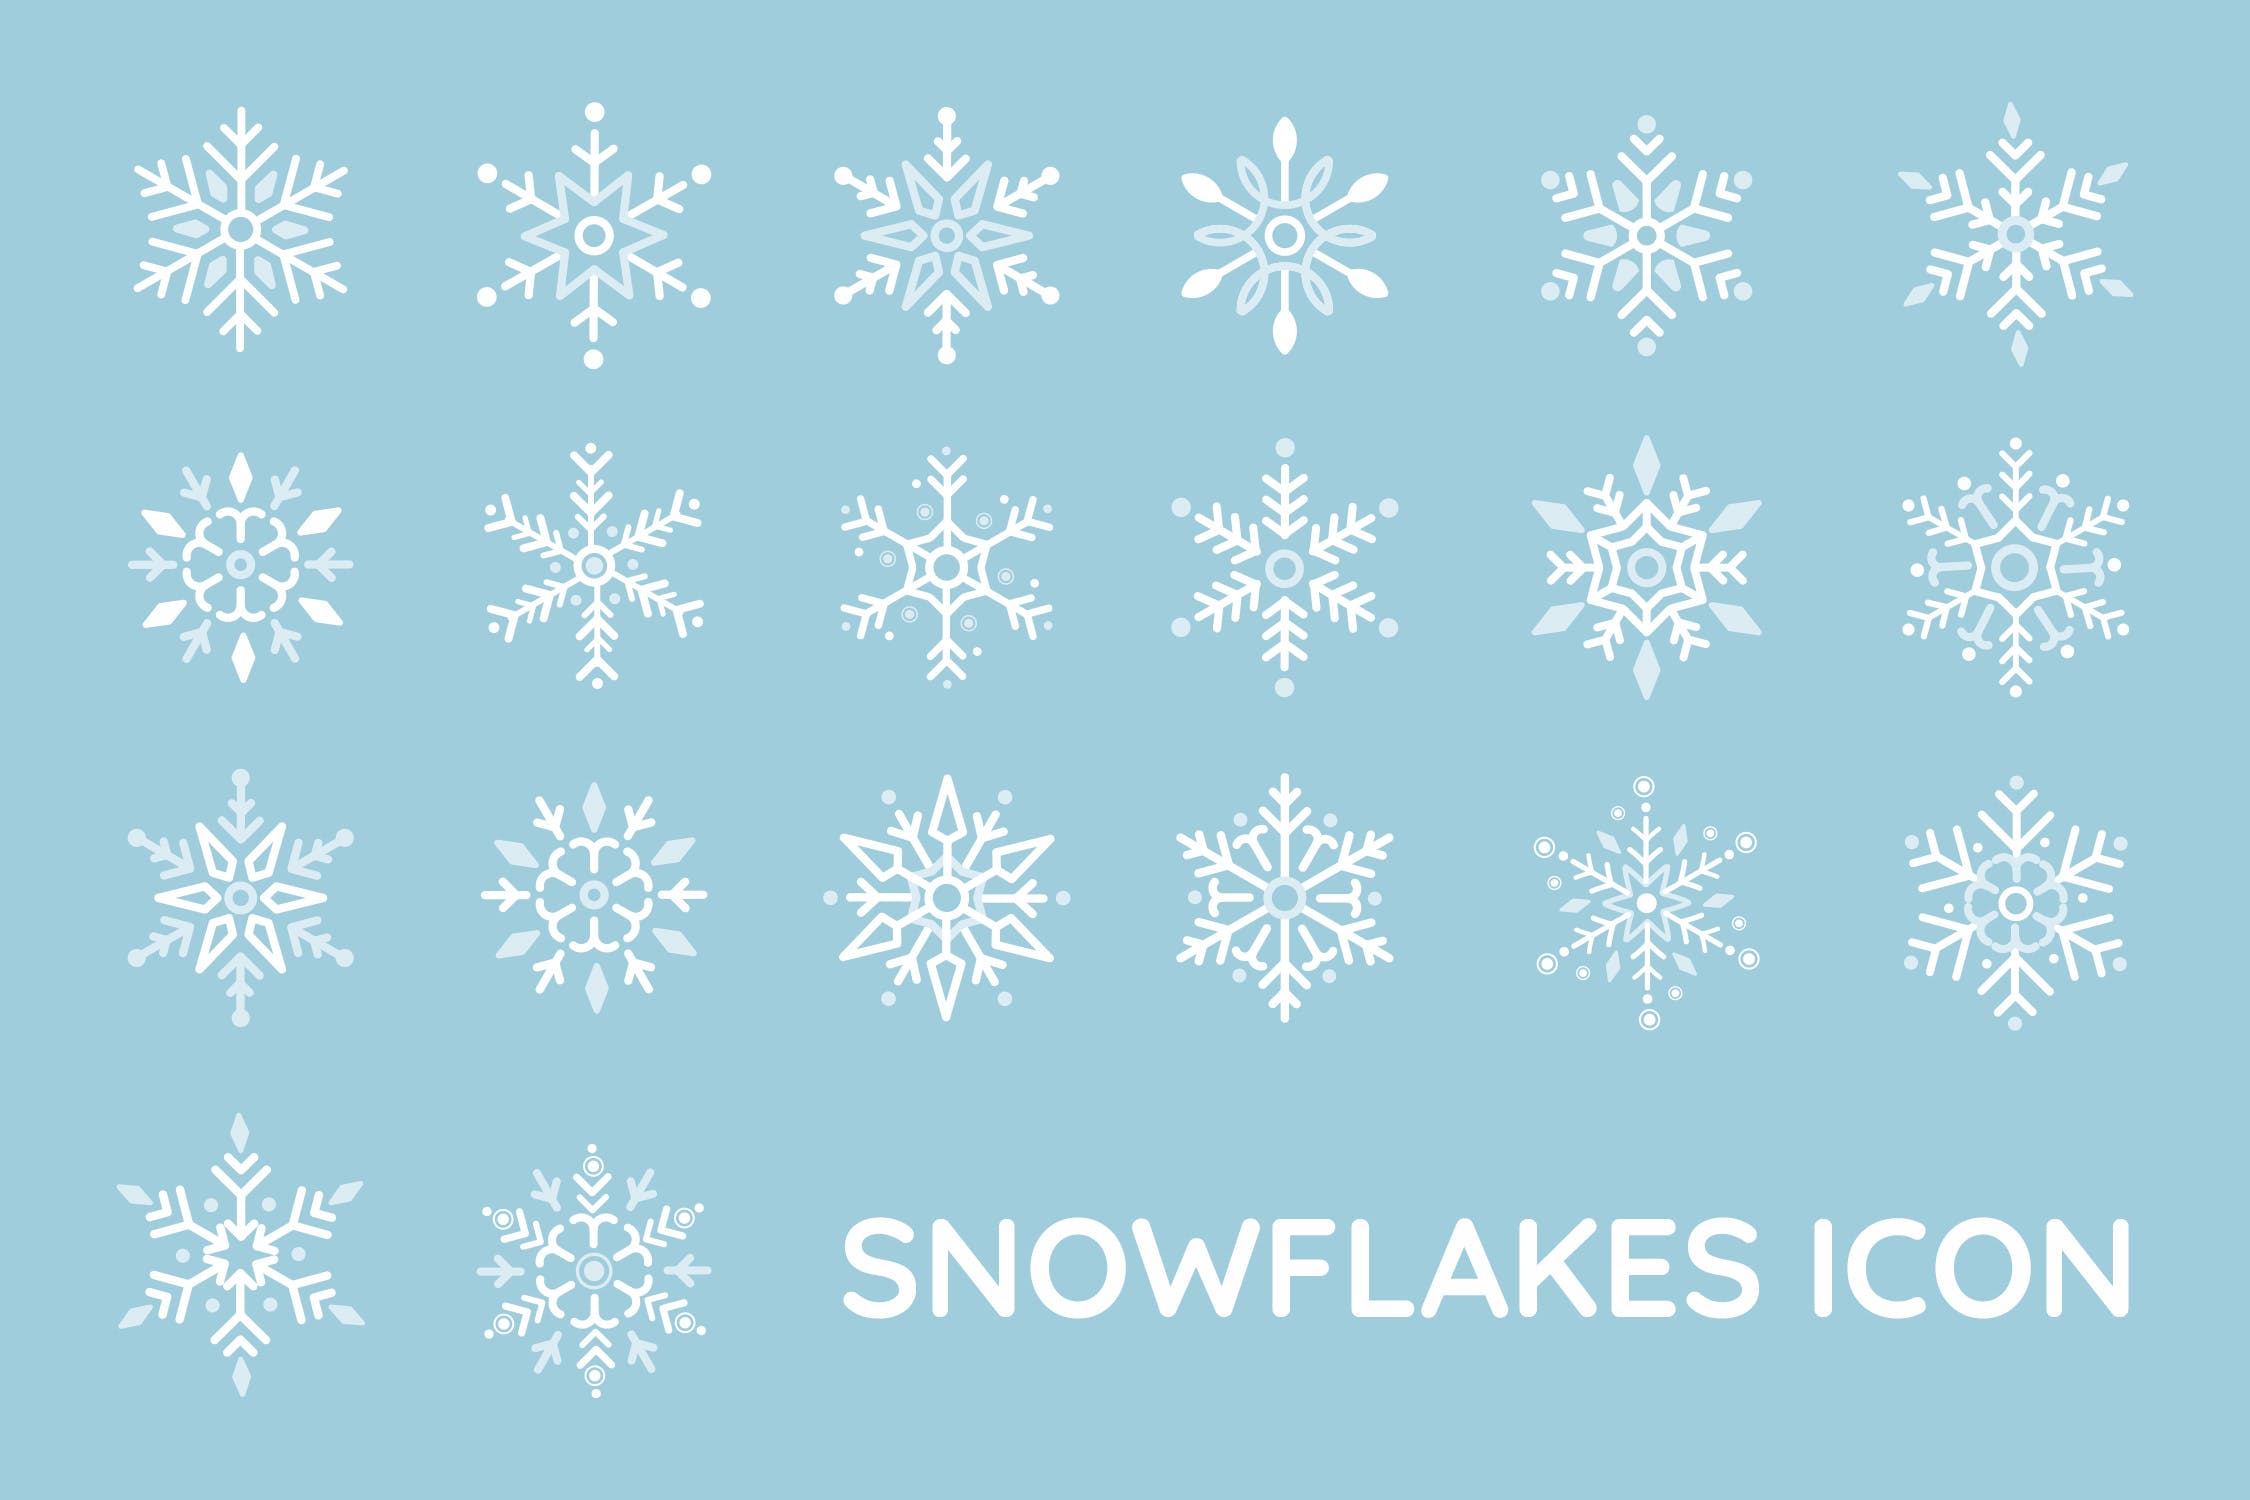 20种雪花图形矢量蚂蚁素材精选图标 Snowflakes Icon插图